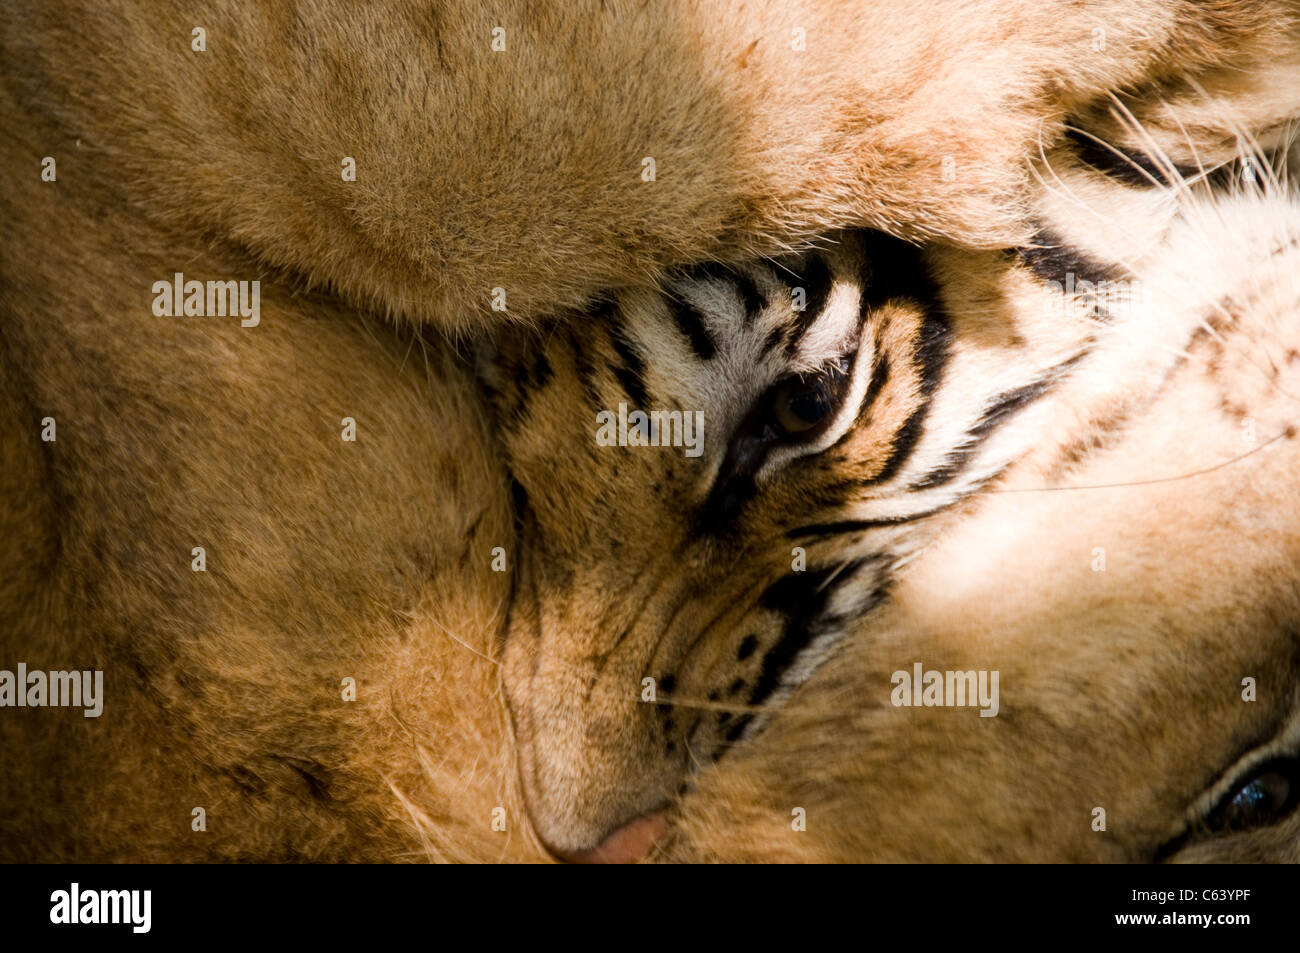 Tigre de Bengala luchando con León en el parque nacional de Corbett, India Foto de stock